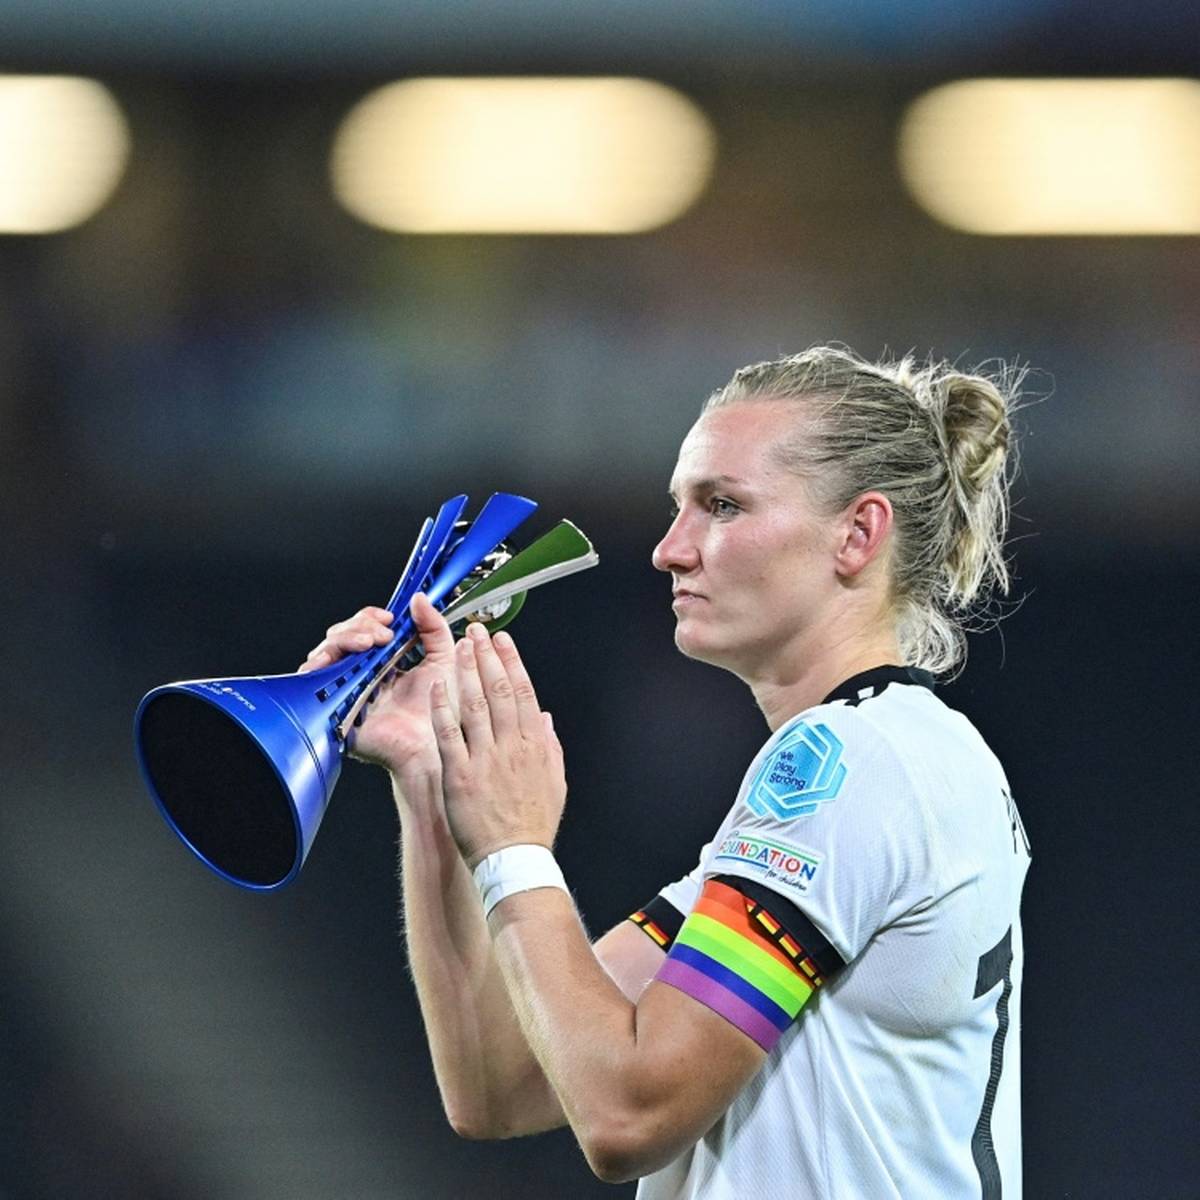 Bei der Europameisterschaft haben die DFB-Frauen für einen großen Hype gesorgt. Darauf wollen sie nun aufbauen.